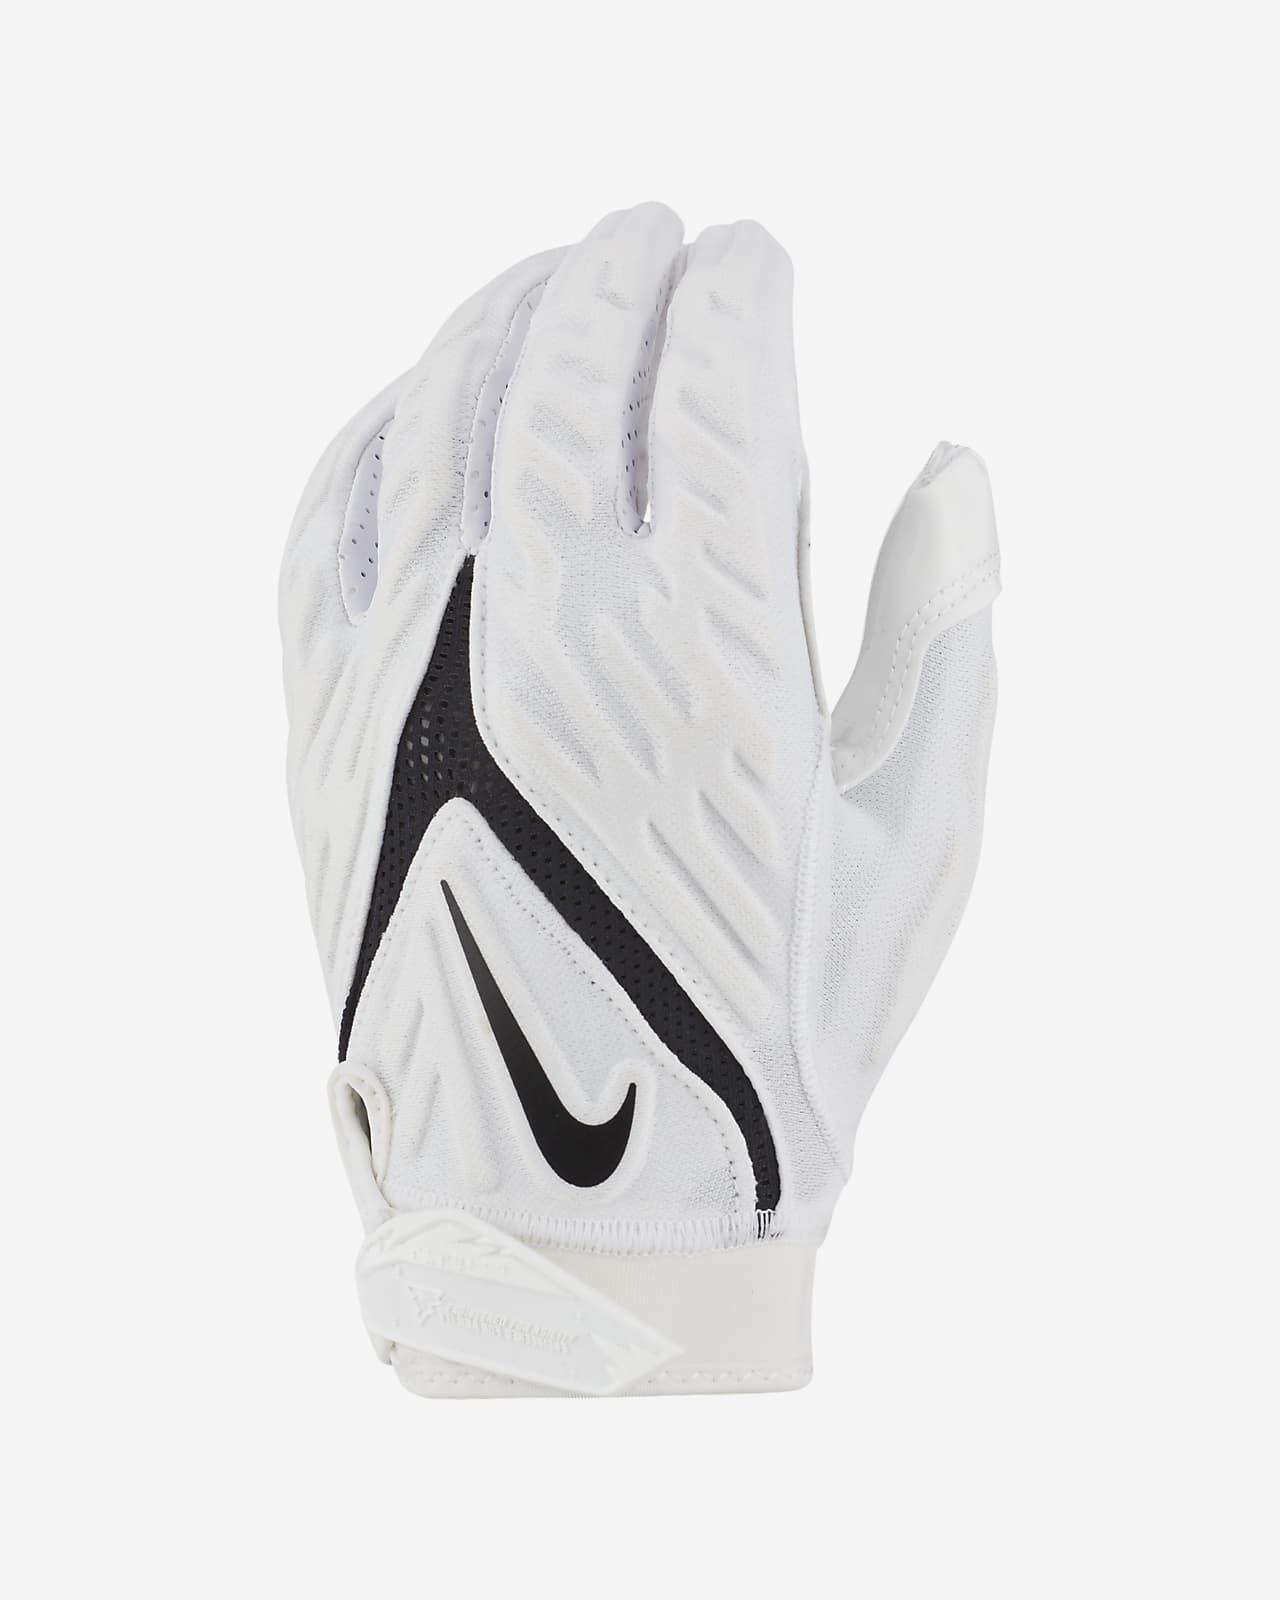 Nike Superbad Football Gloves